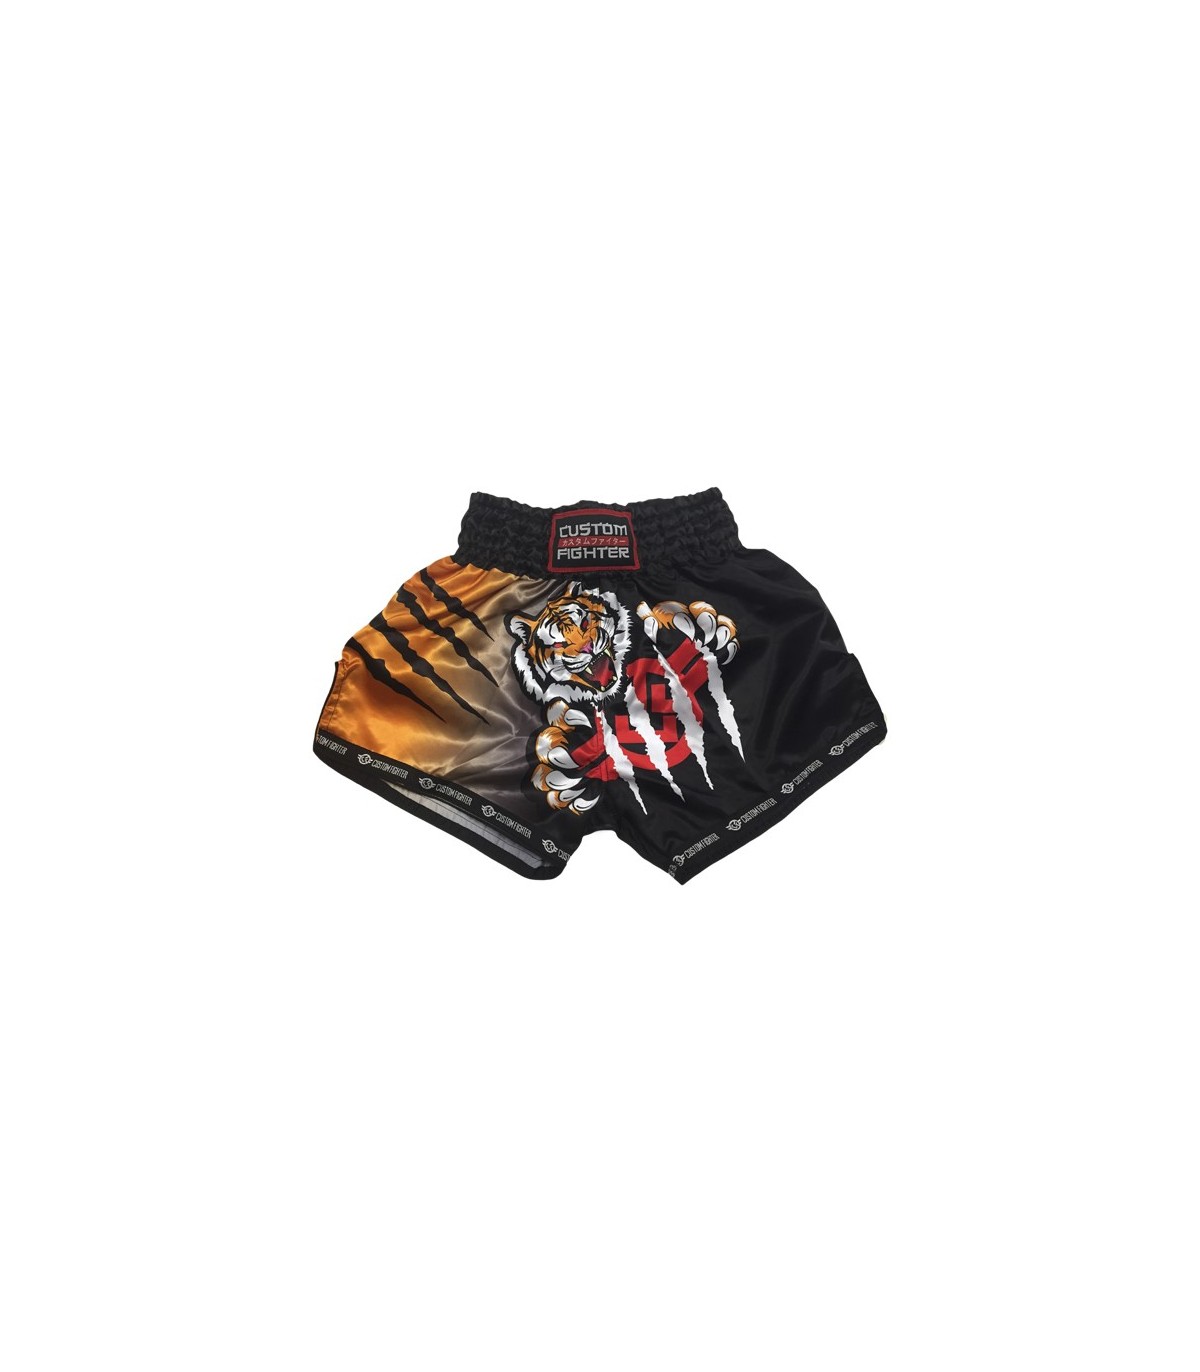 Pantalones cortos PUGILIST P1 tiger muay thai, shorts deportivos de lucha  de boxeo, bordado, secado rápido, negro